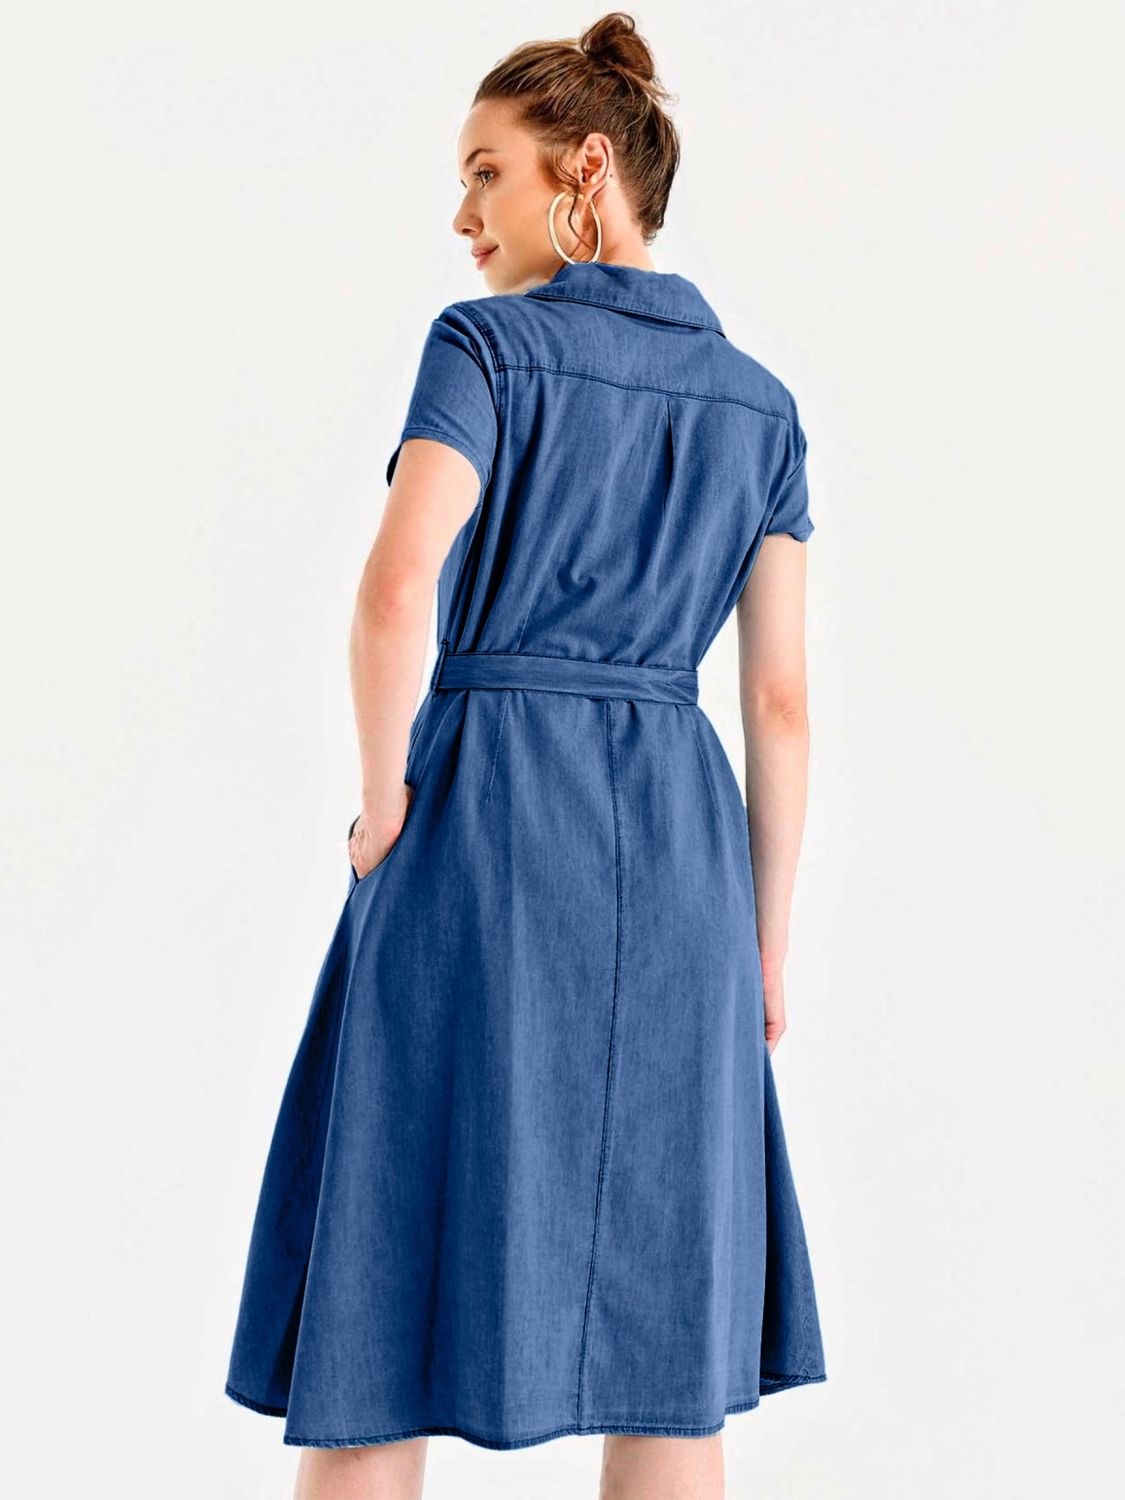 Летнее джинсовое платье рубашка синего цвета - фото